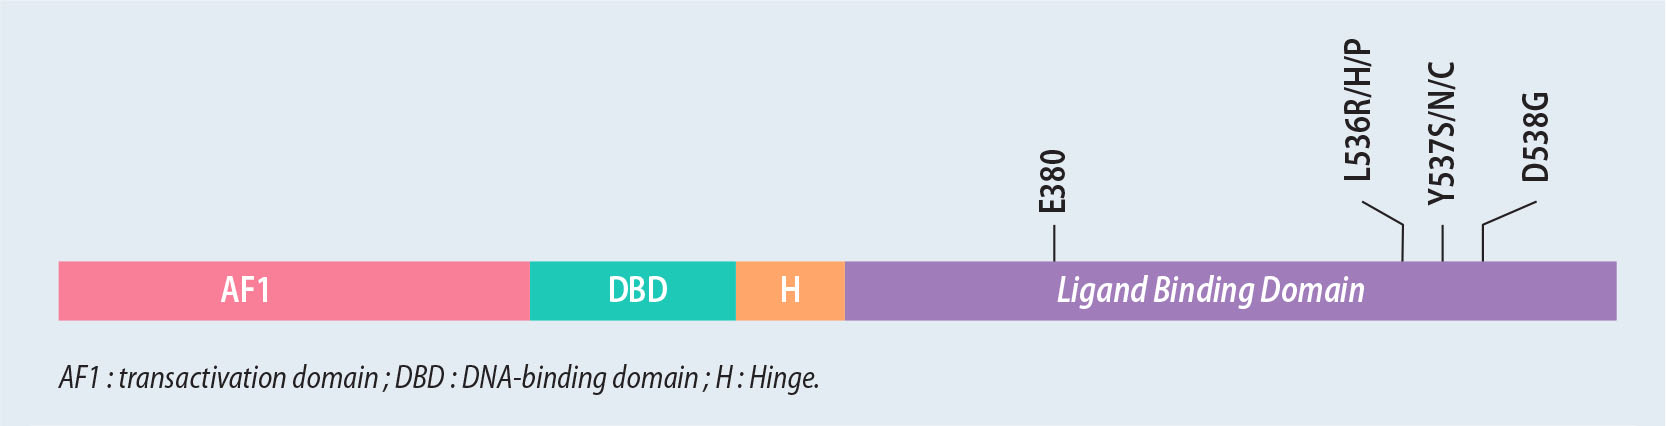 ADN tumoral circulant et mutation ESR1 dans les cancers du sein hormonodépendants - Figure 1